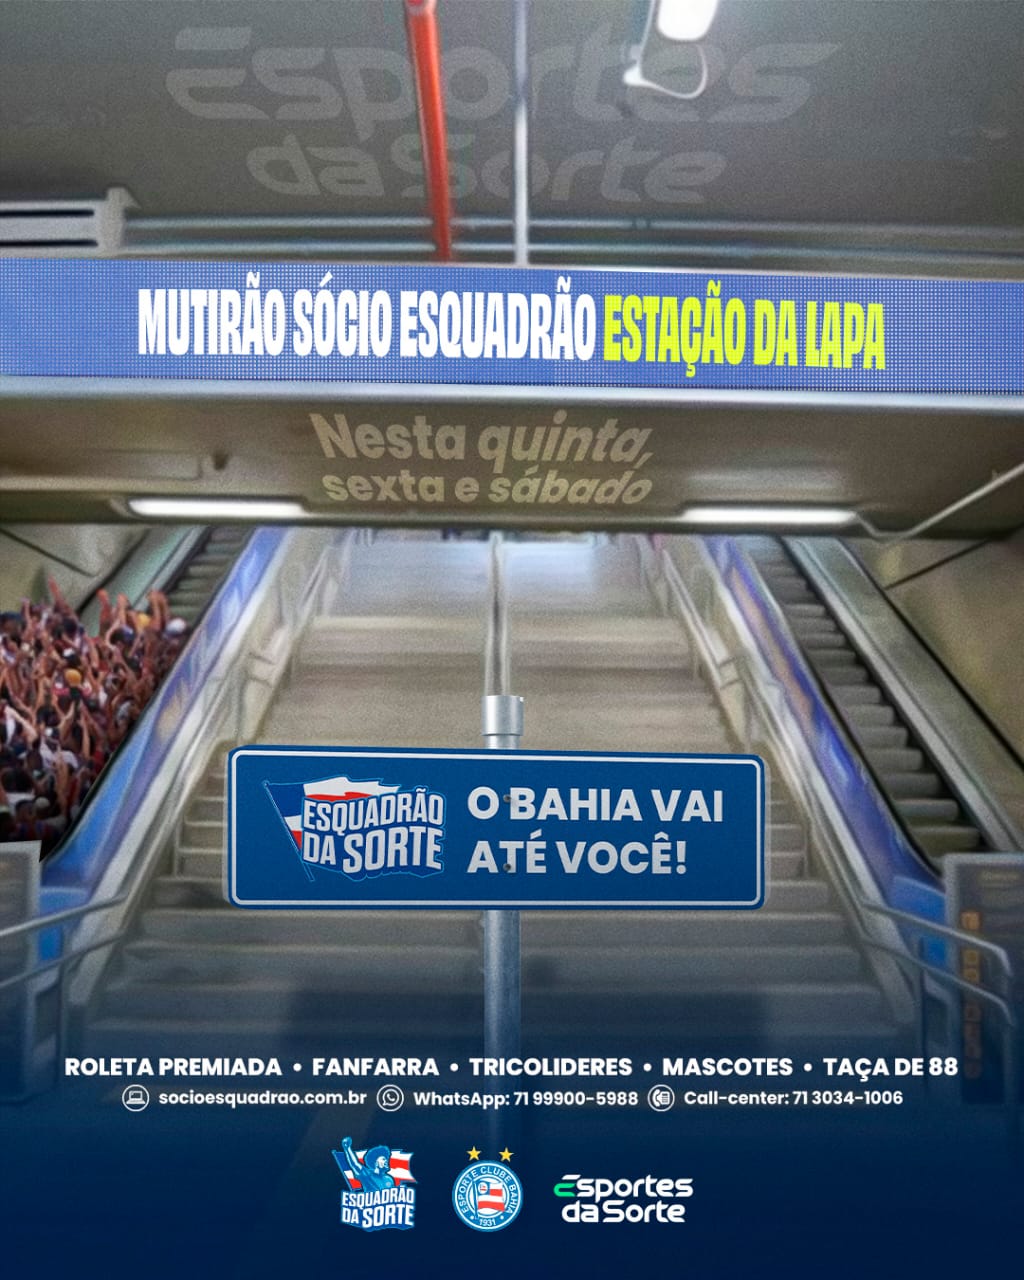 Card de divulgação de evento do Esporte Clube Bahia na Estação da Lapa